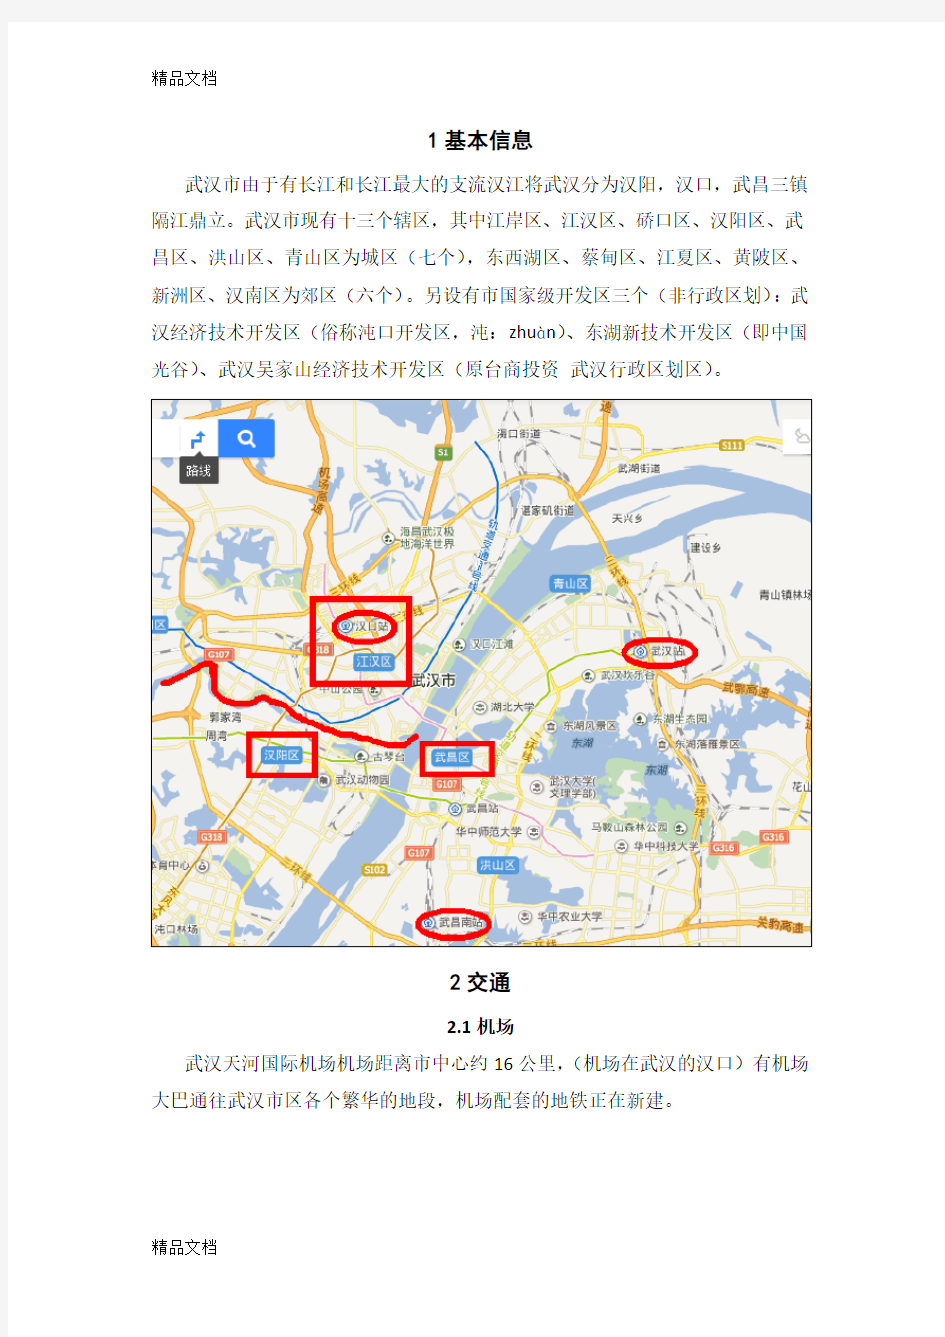 最新最新版武汉市区旅游攻略(1-2日游)资料